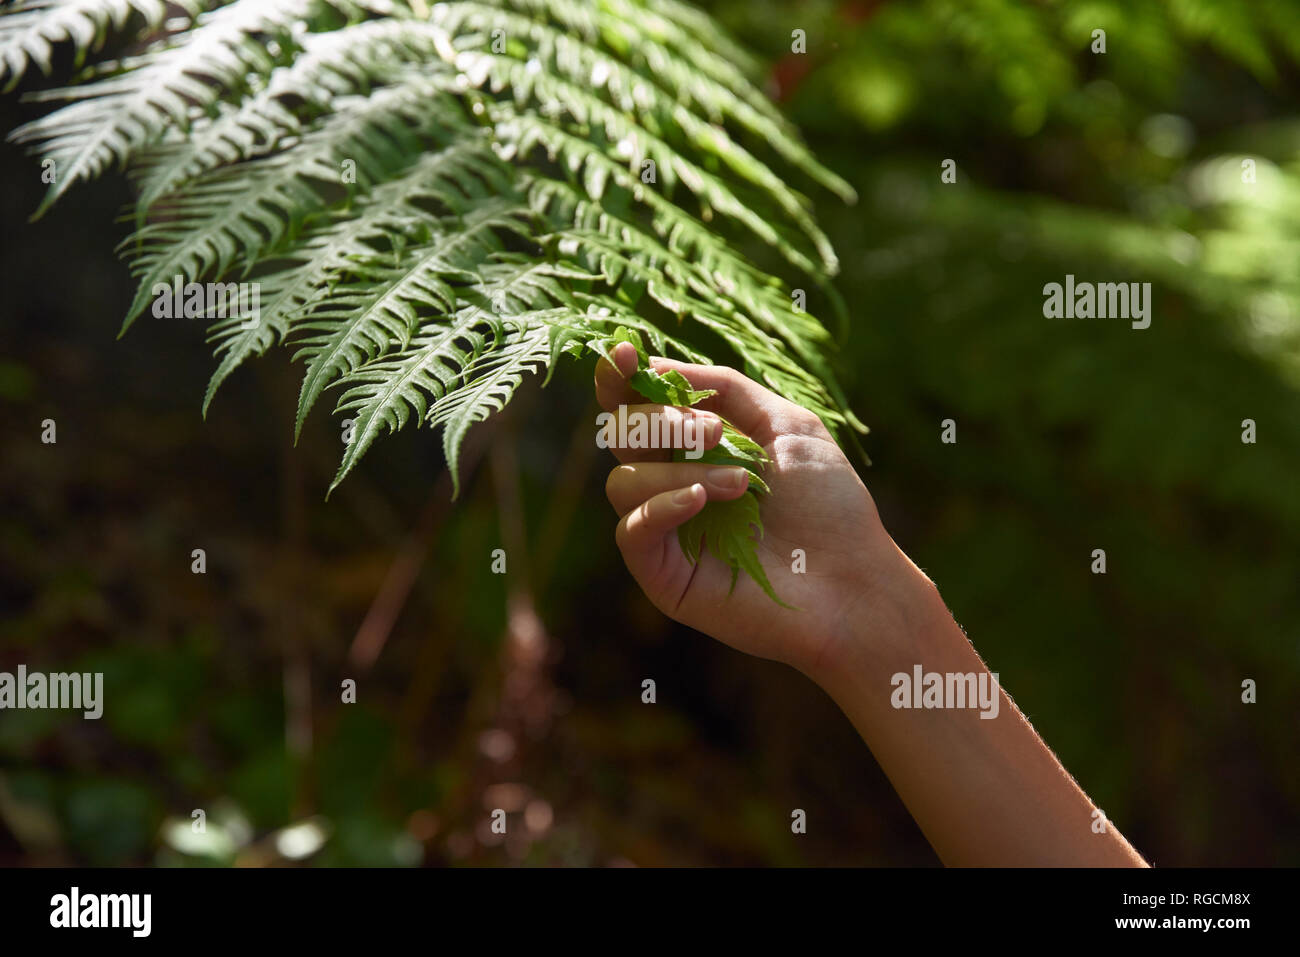 Spanien, Kanarische Inseln, La Palma, Nahaufnahme einer Hand berühren, grünen Wald fern Blatt Stockfoto